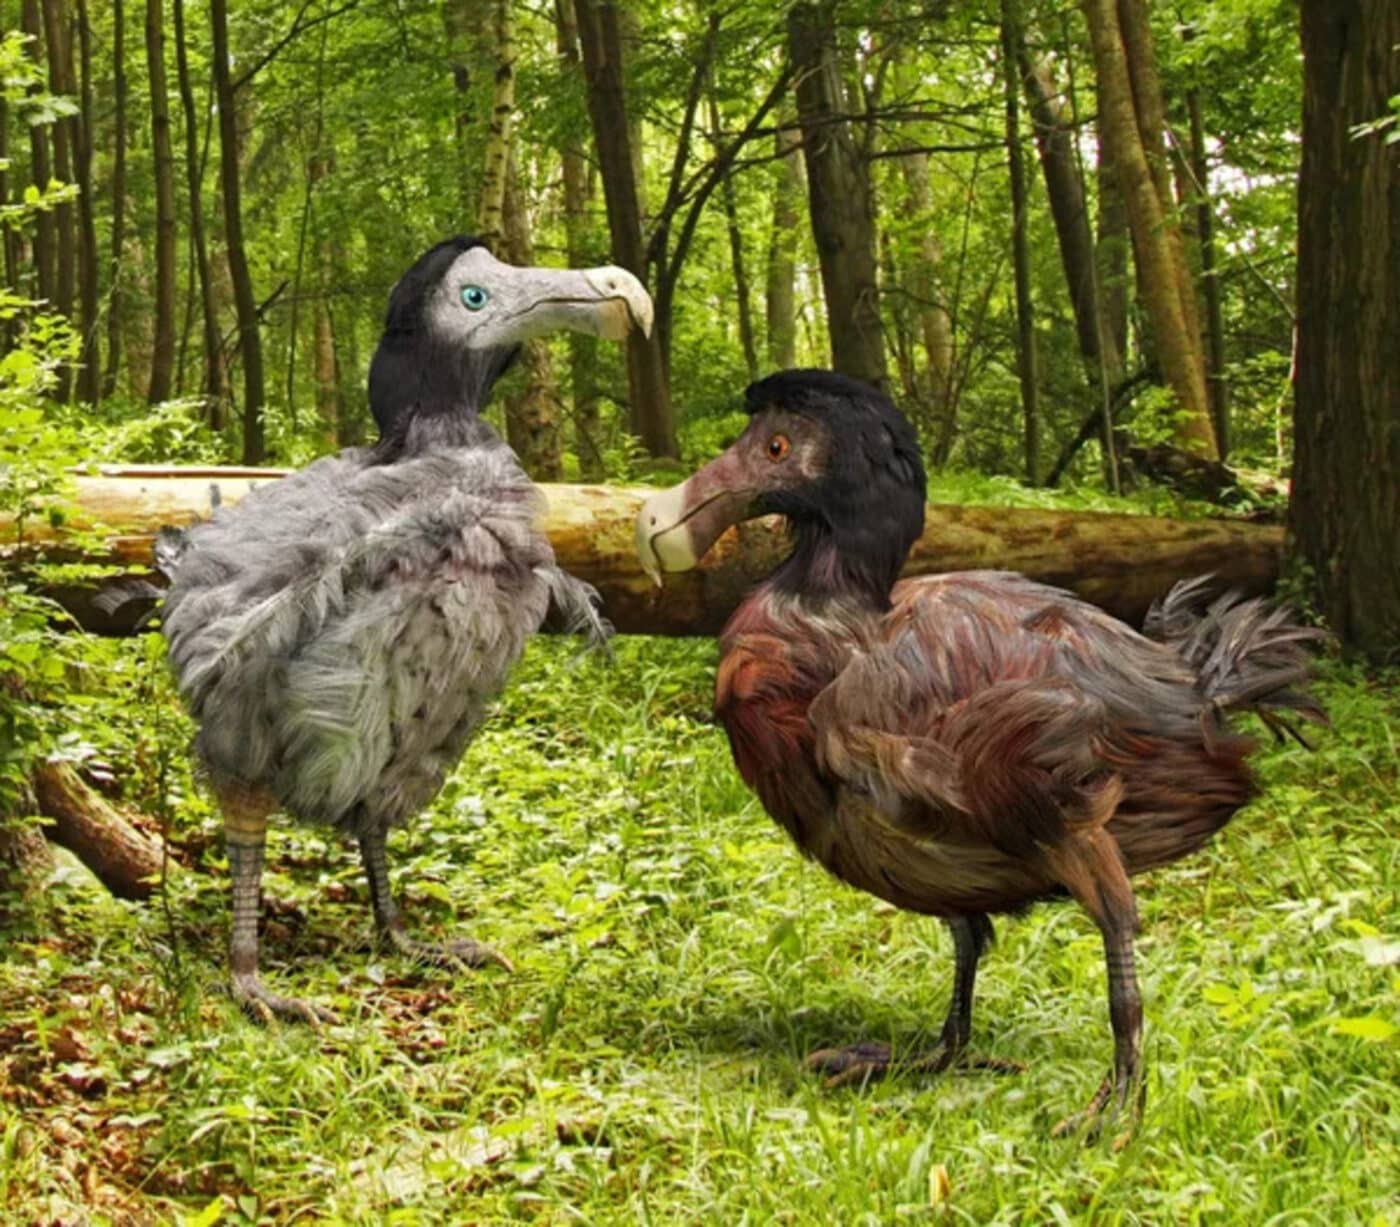 estinzione dodo, uccello, animale, riportare in vita, de-estinzione, Colossal Biosciences, genetica, clone, dodo funzionale, ricerca, cause, estinzione, Mauritius, start-up, ecosistema, DNA, Science Close-up Engineering